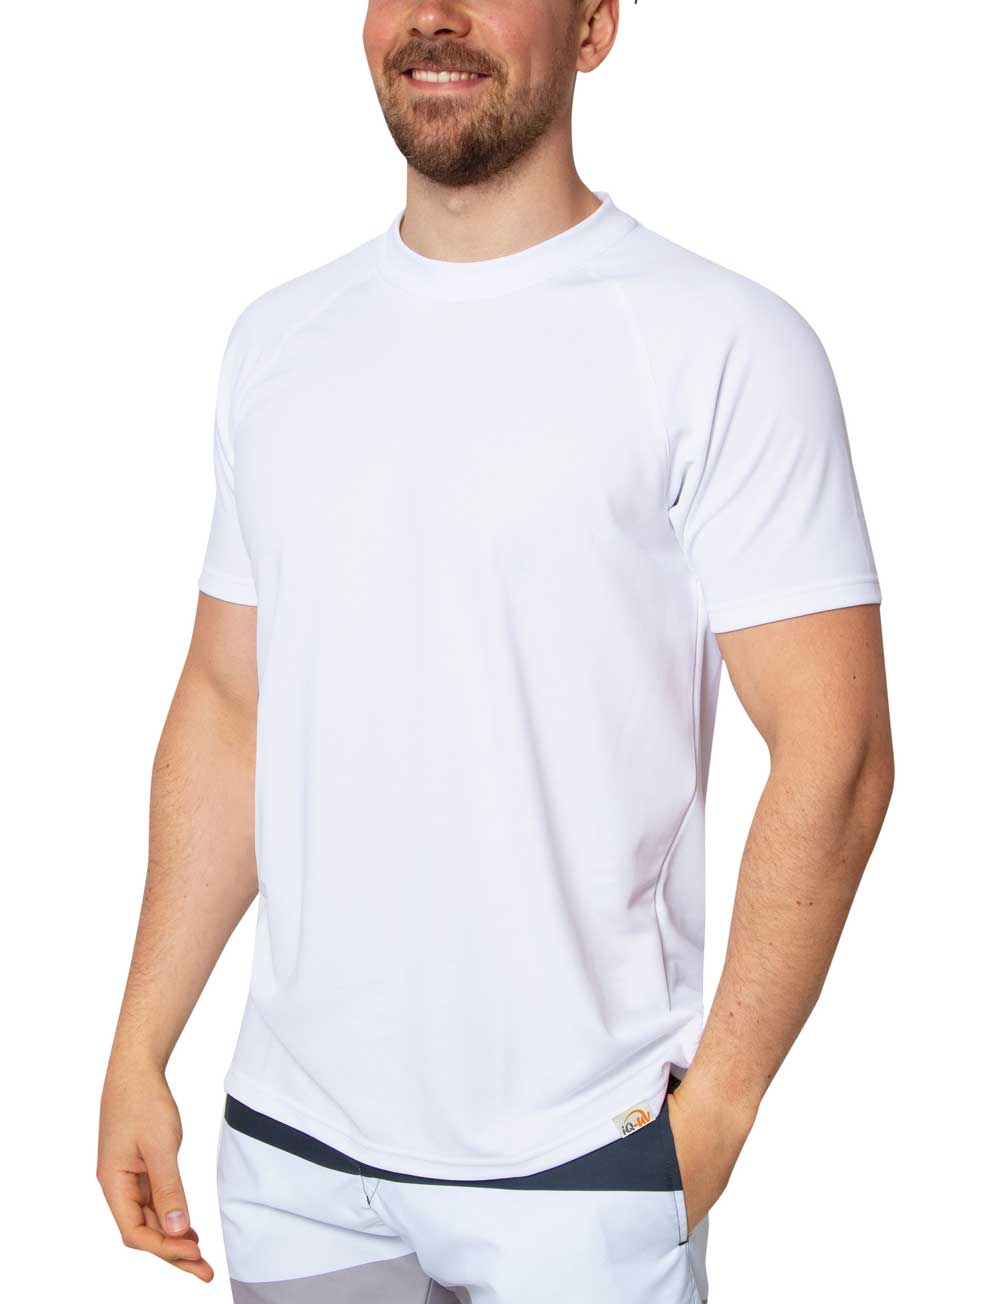 UV T-Shirt für Herren Outdoor Rundhals weiß angezogen